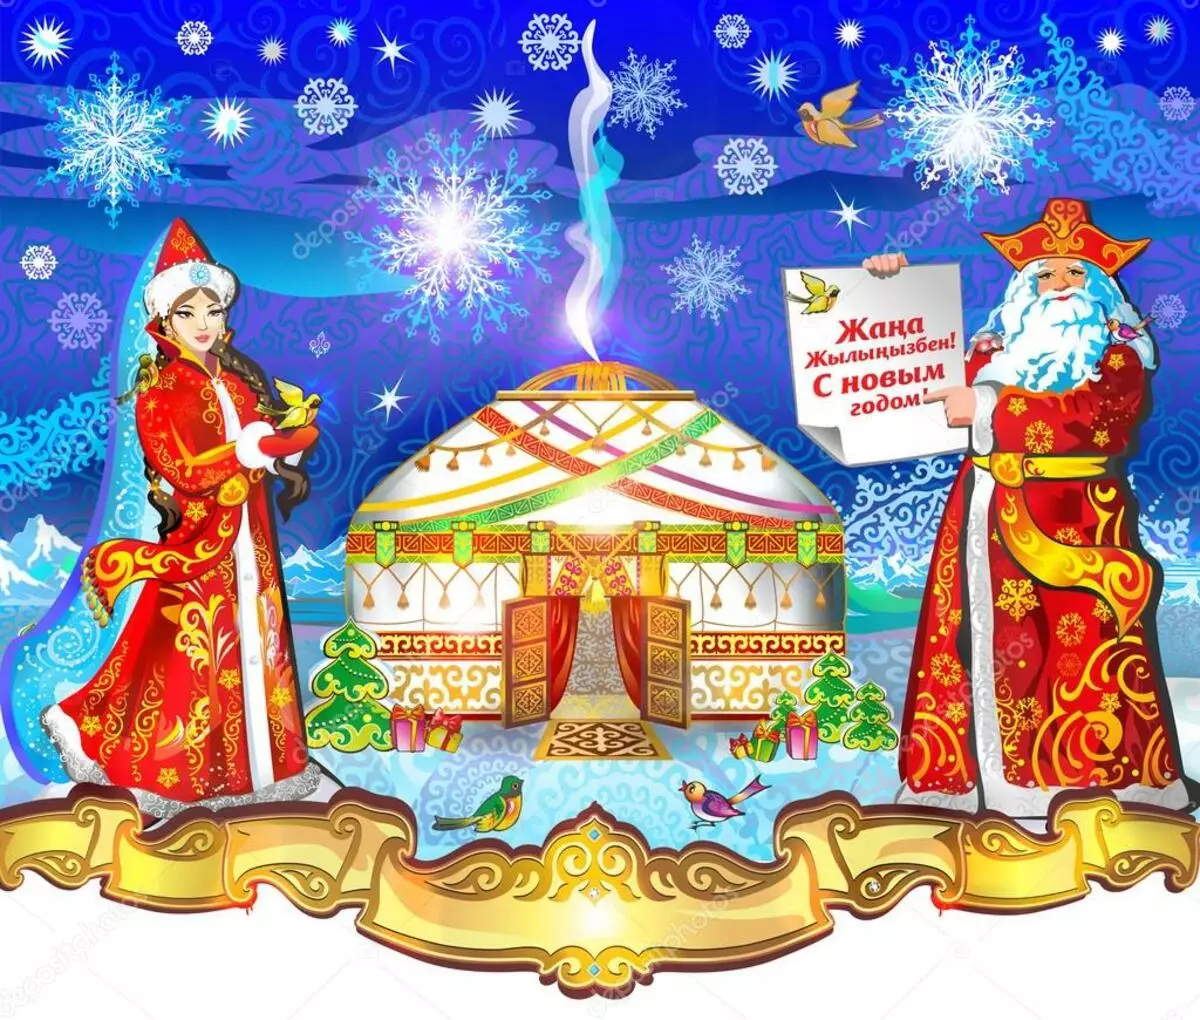 سال نو قزاقستان: چگونه جشن تعطیلات سال نو در قزاقستان؟ چند قزاقستان استراحت می کنند؟ سنت ها و آداب و رسوم در تعطیلات 24567_8